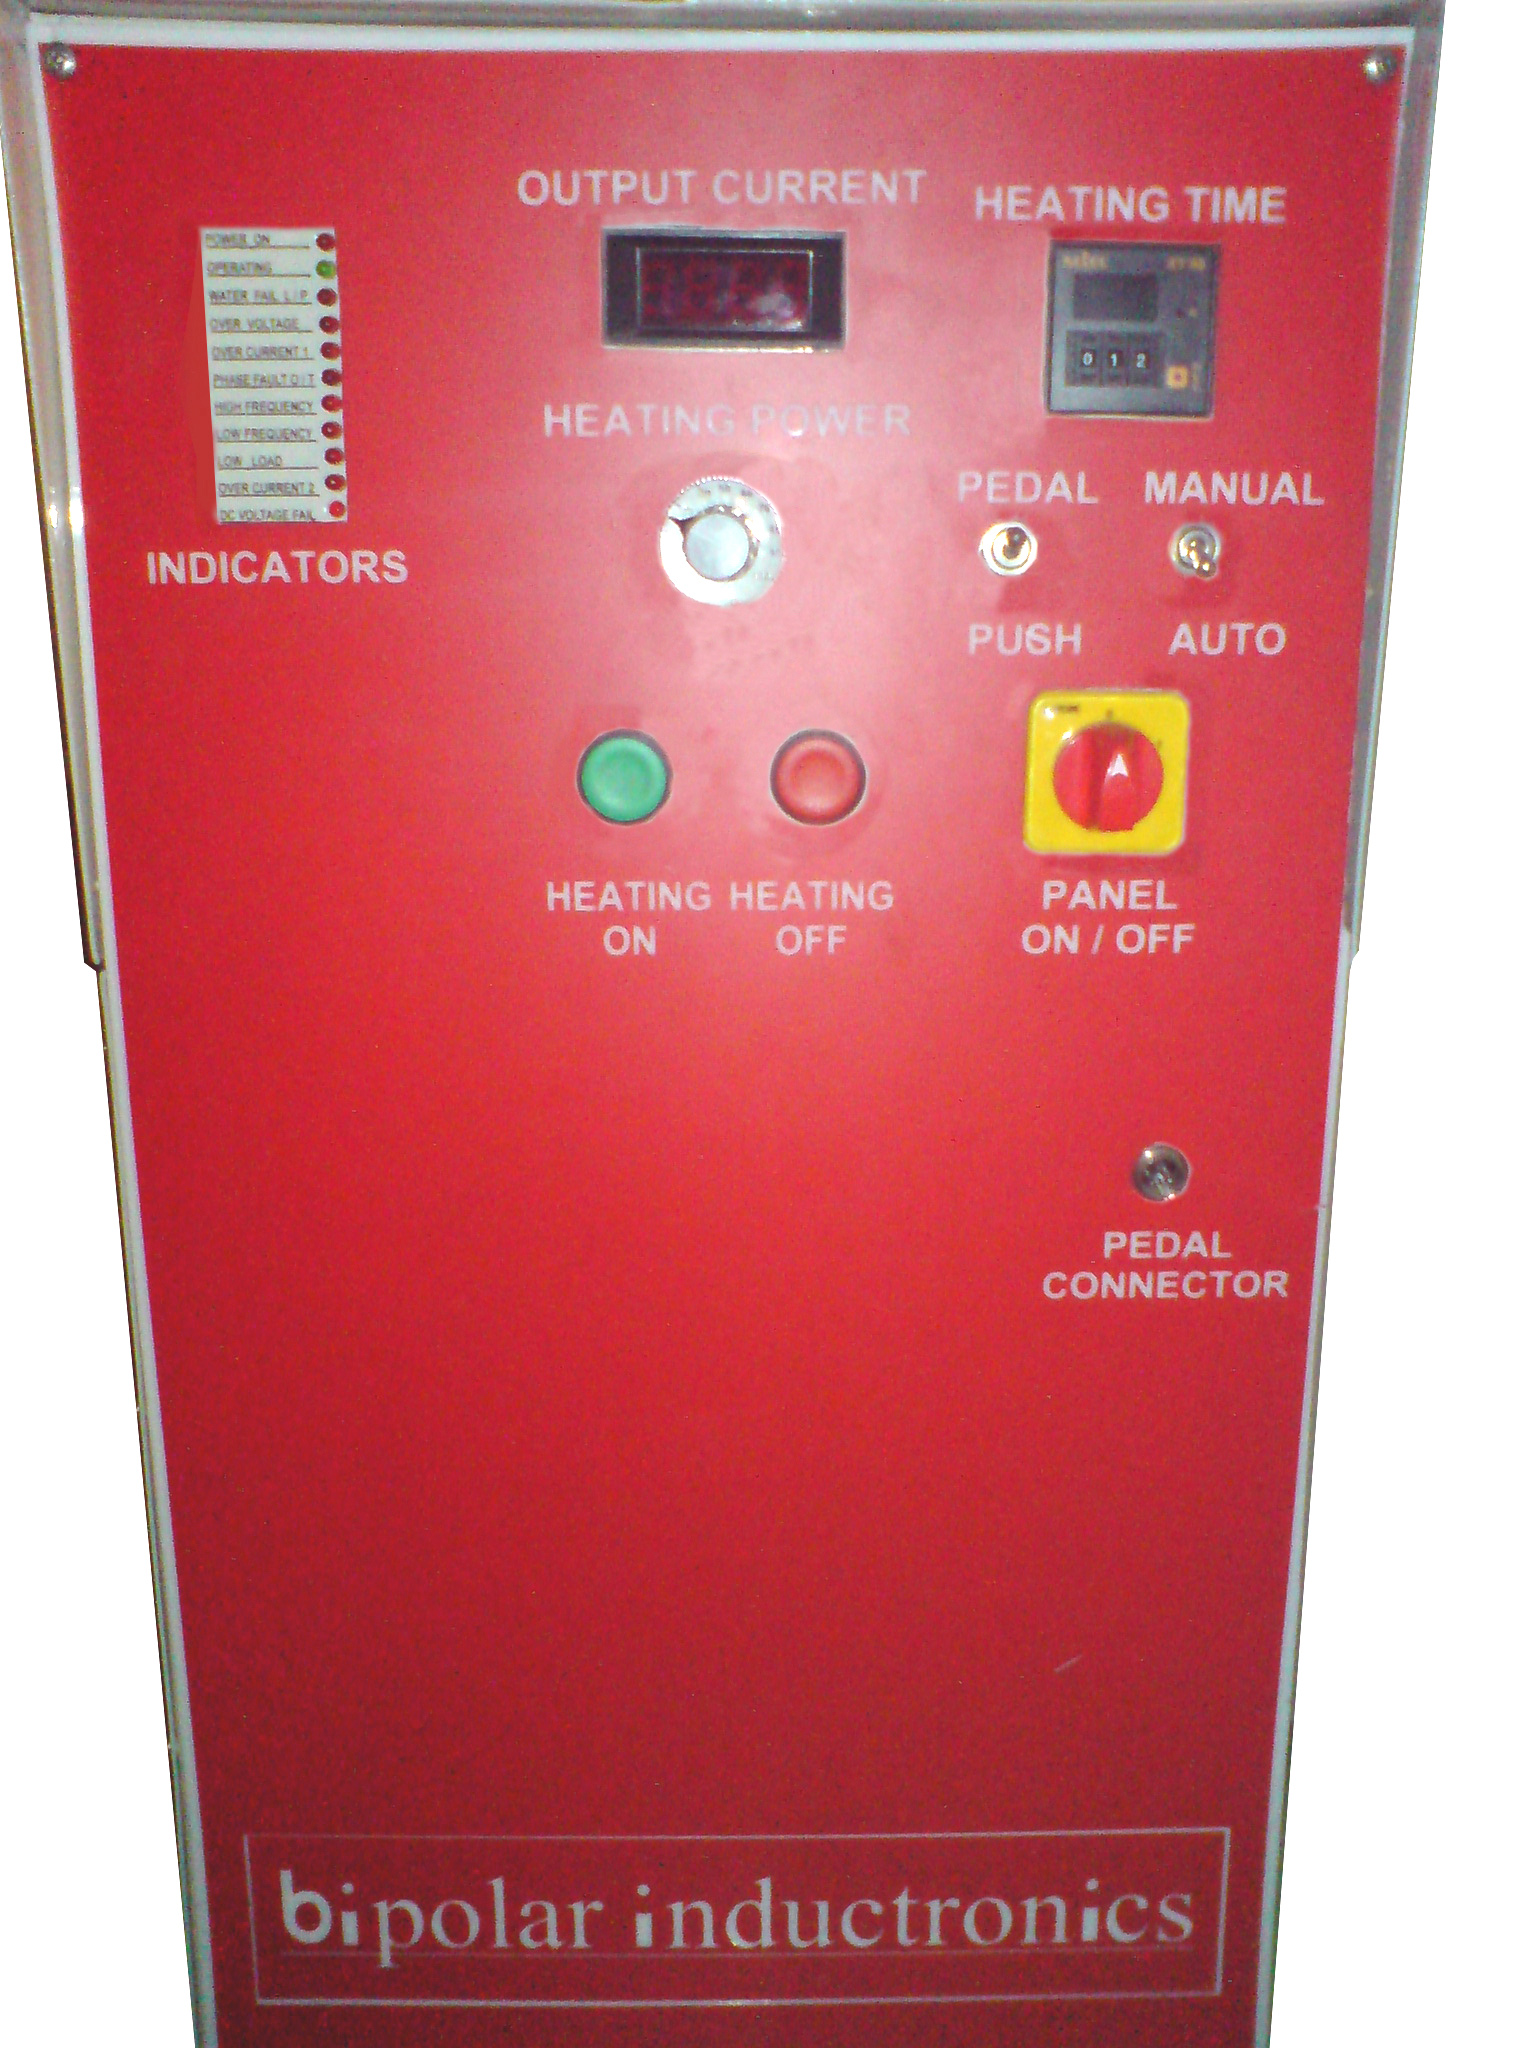 Induction Heating Machine